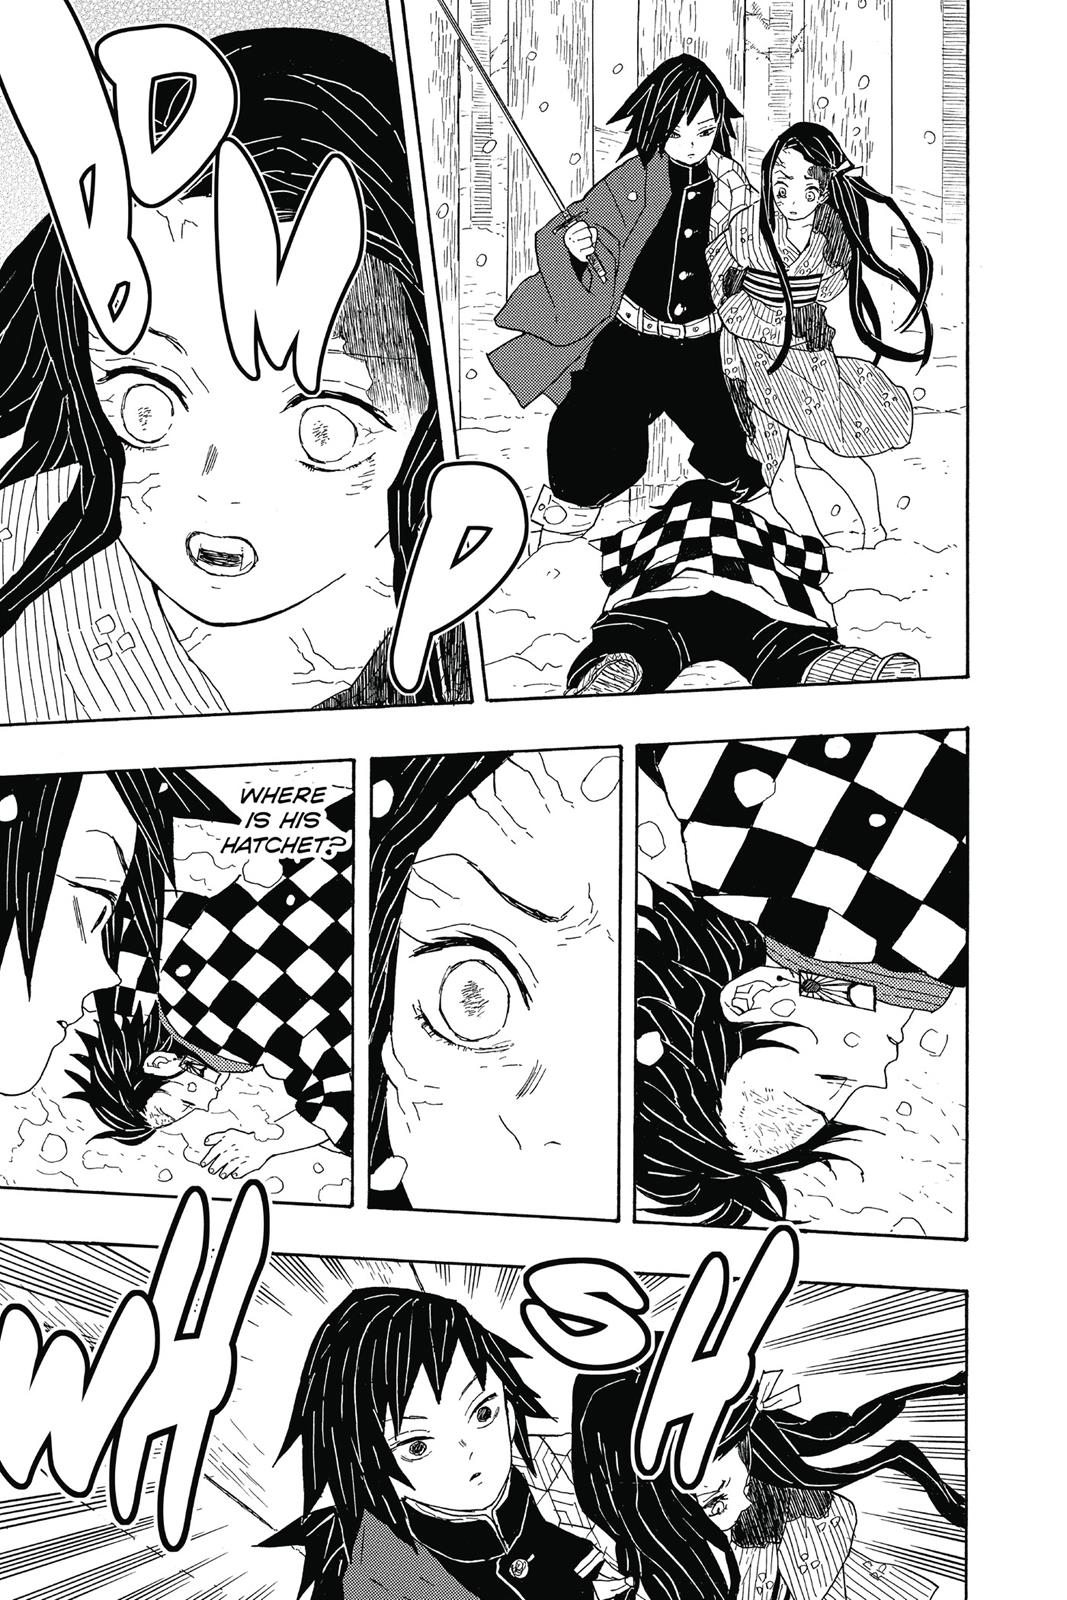 Demon Slayer Manga Manga Chapter - 1 - image 28